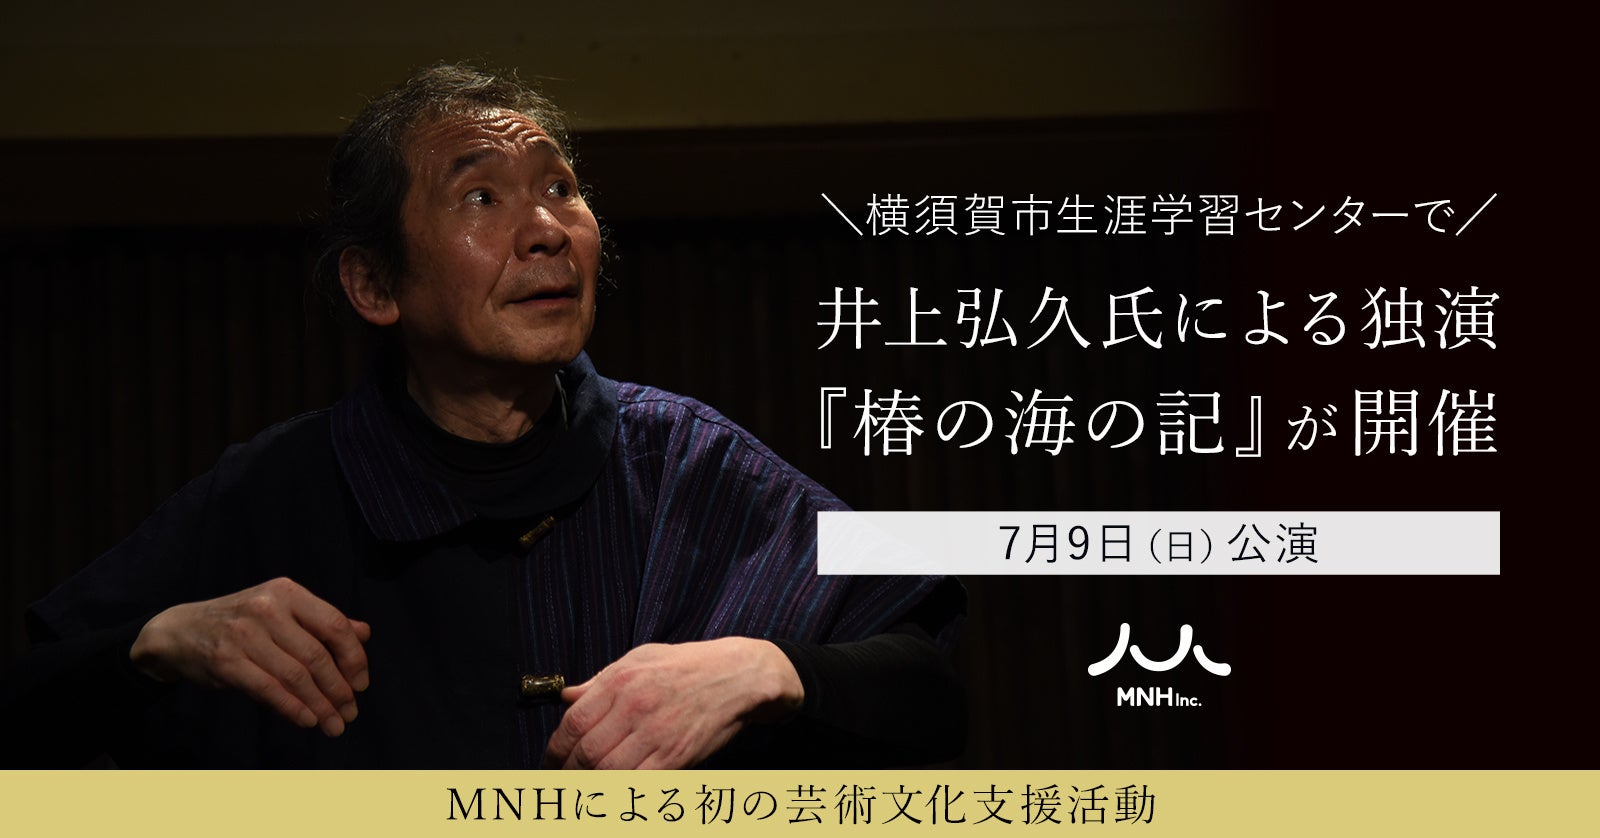 ​ 7月9日（日）公演。井上弘久氏による独演『椿の海の記』が横須賀市生涯学習センターで開催